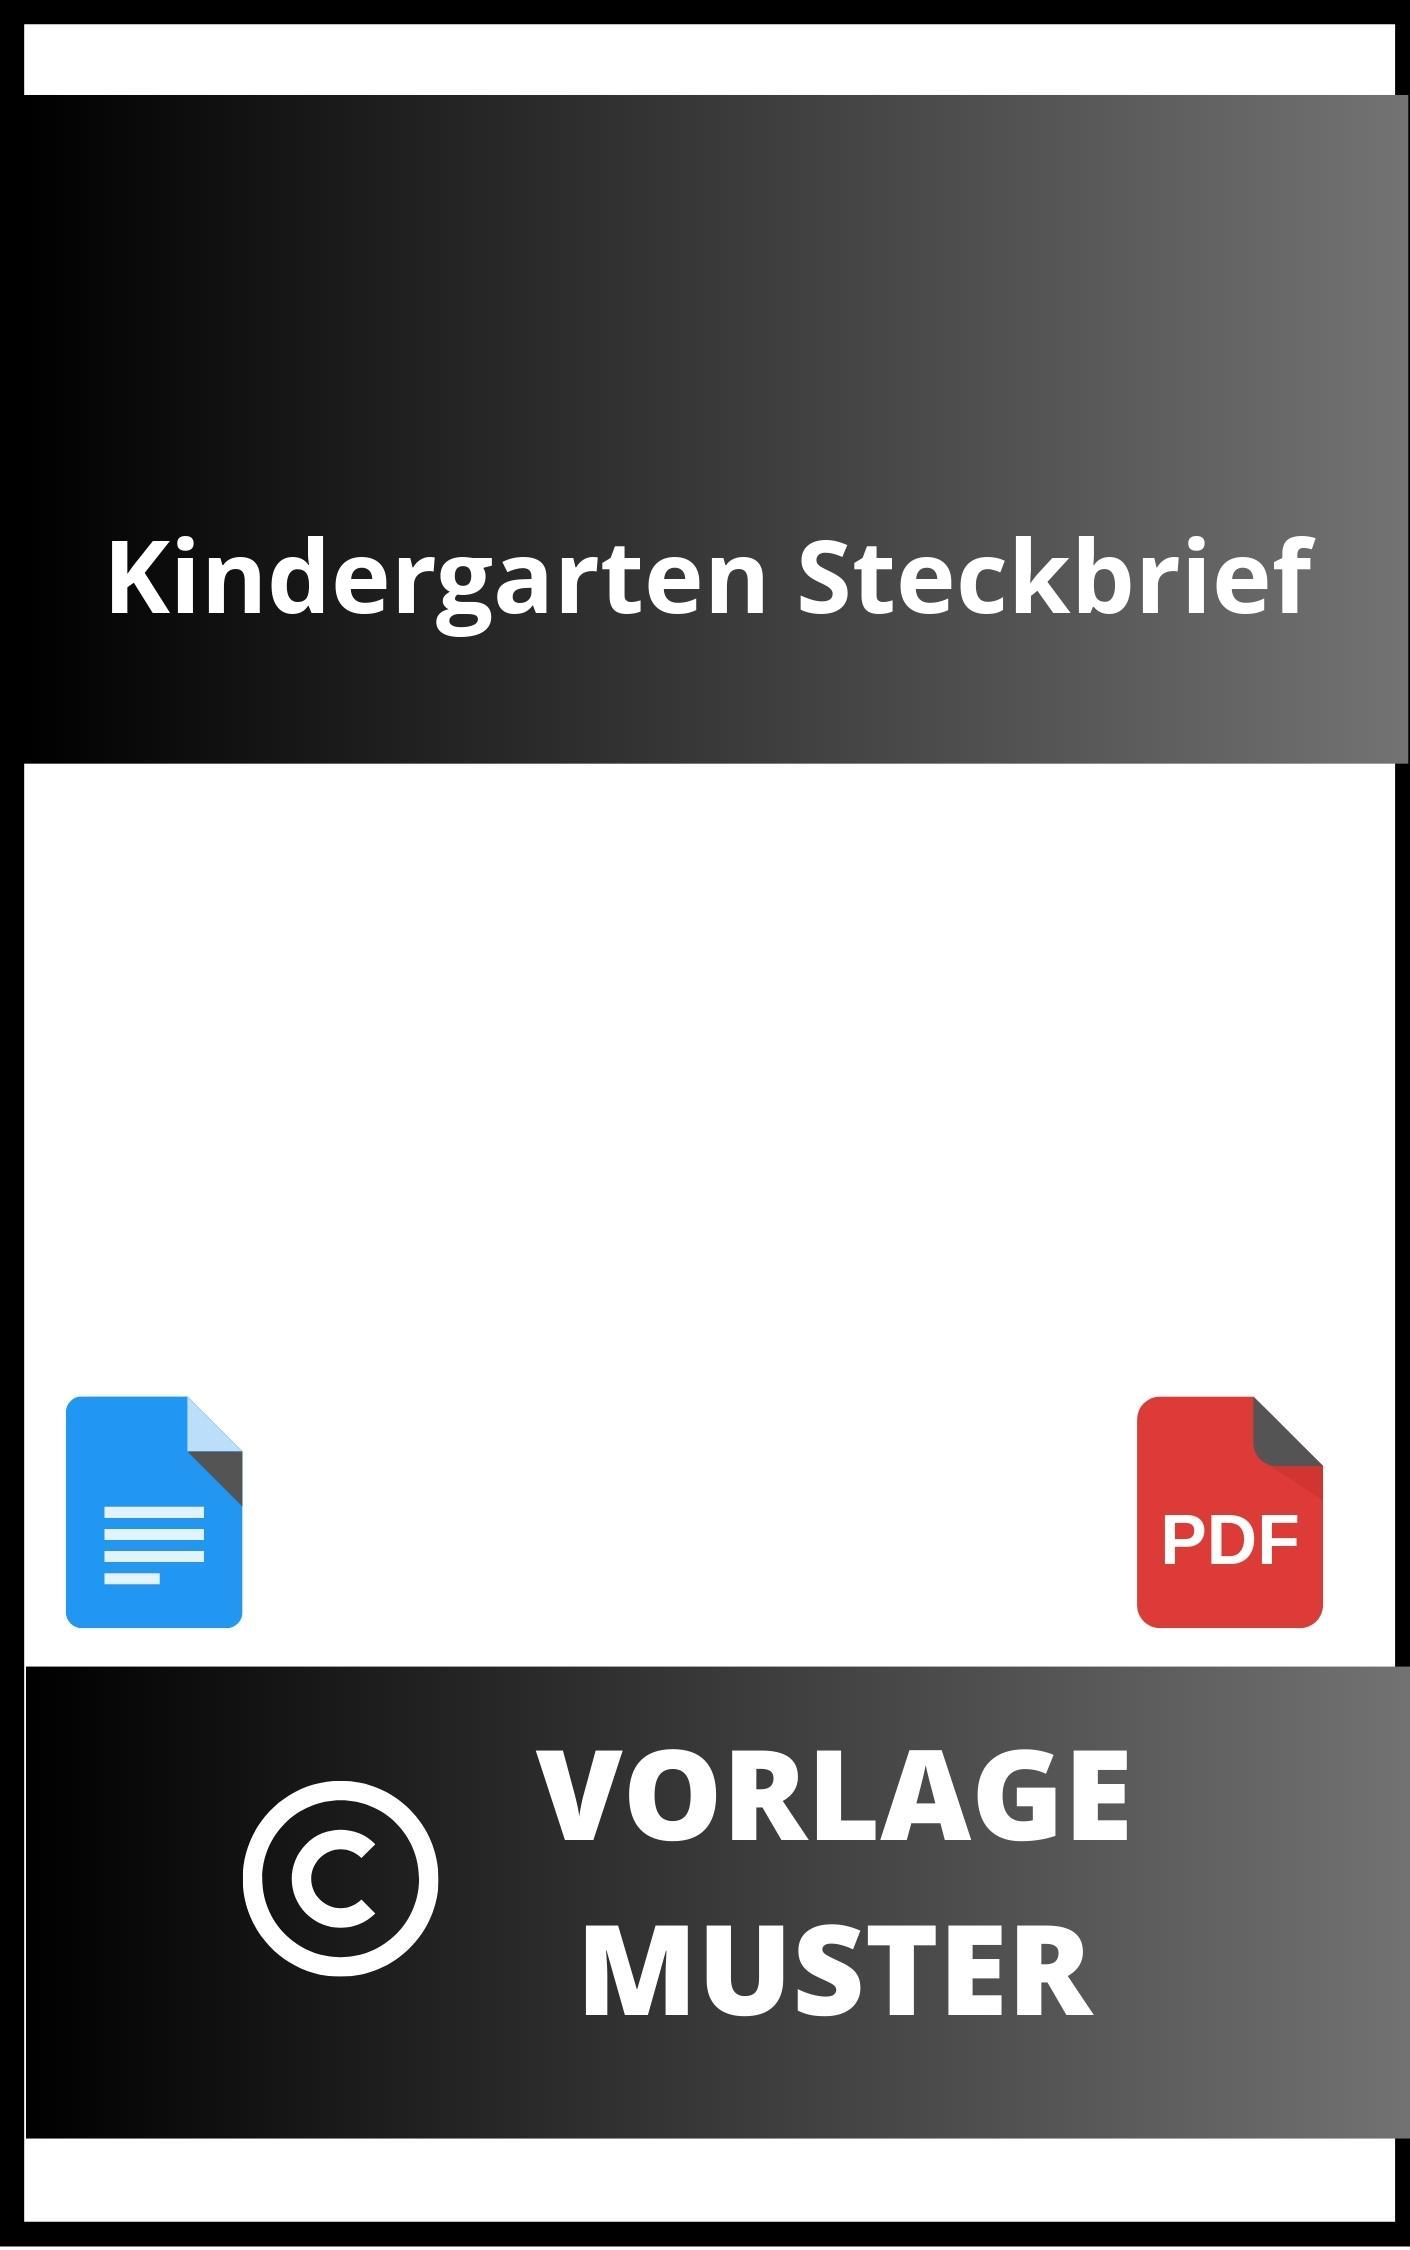 Kindergarten Steckbrief